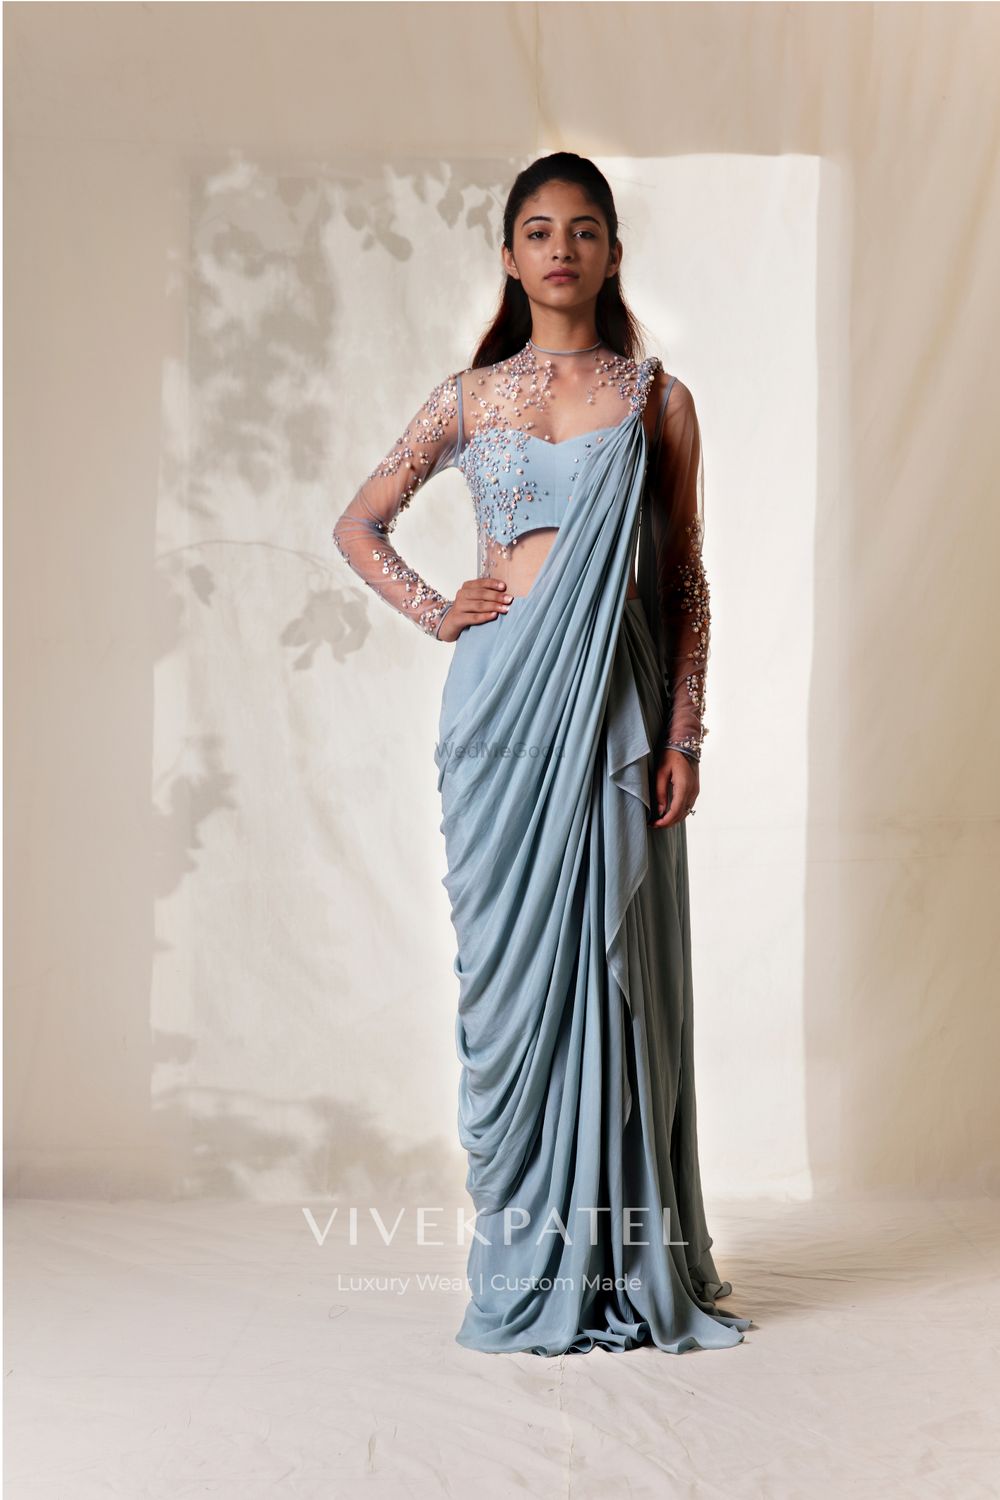 Photo By Vivek Patel Studio - Bridal Wear